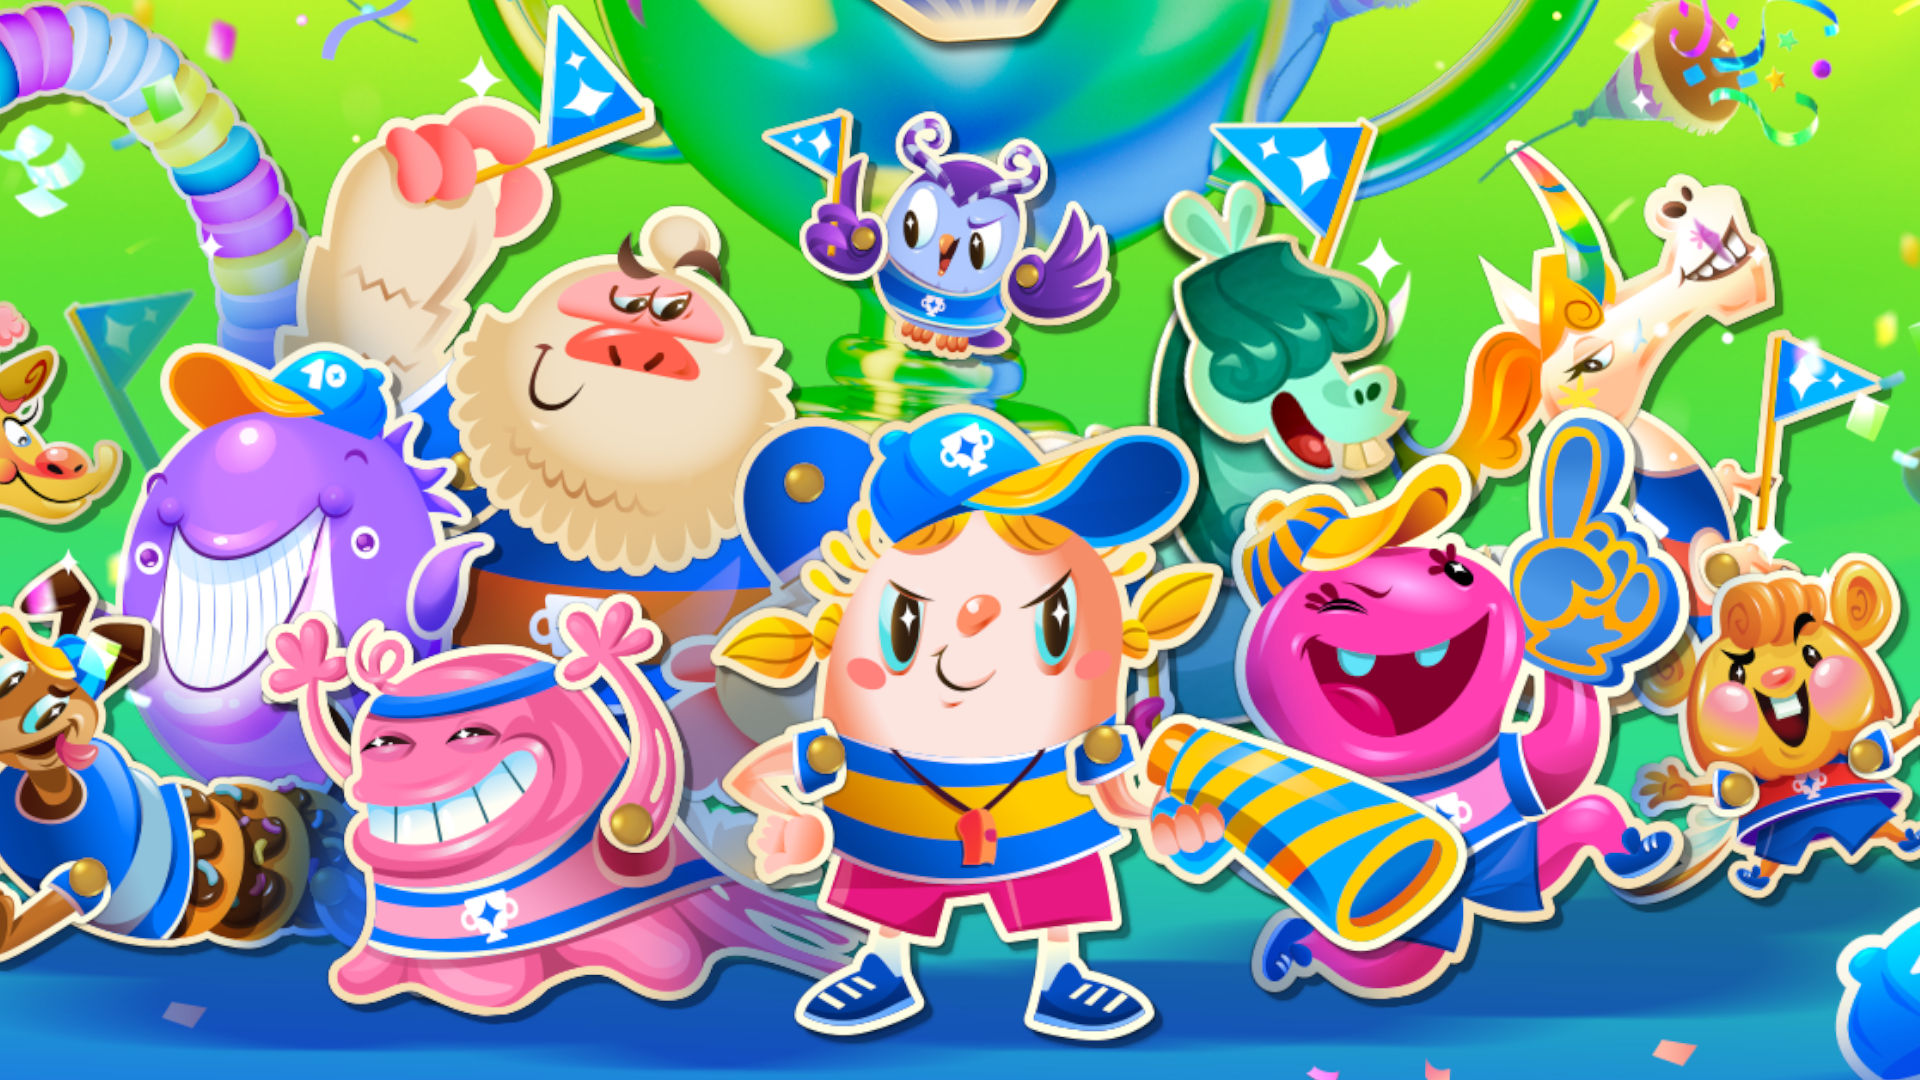 Candy Crush Saga King - Play Candy Crush Saga King Game online at